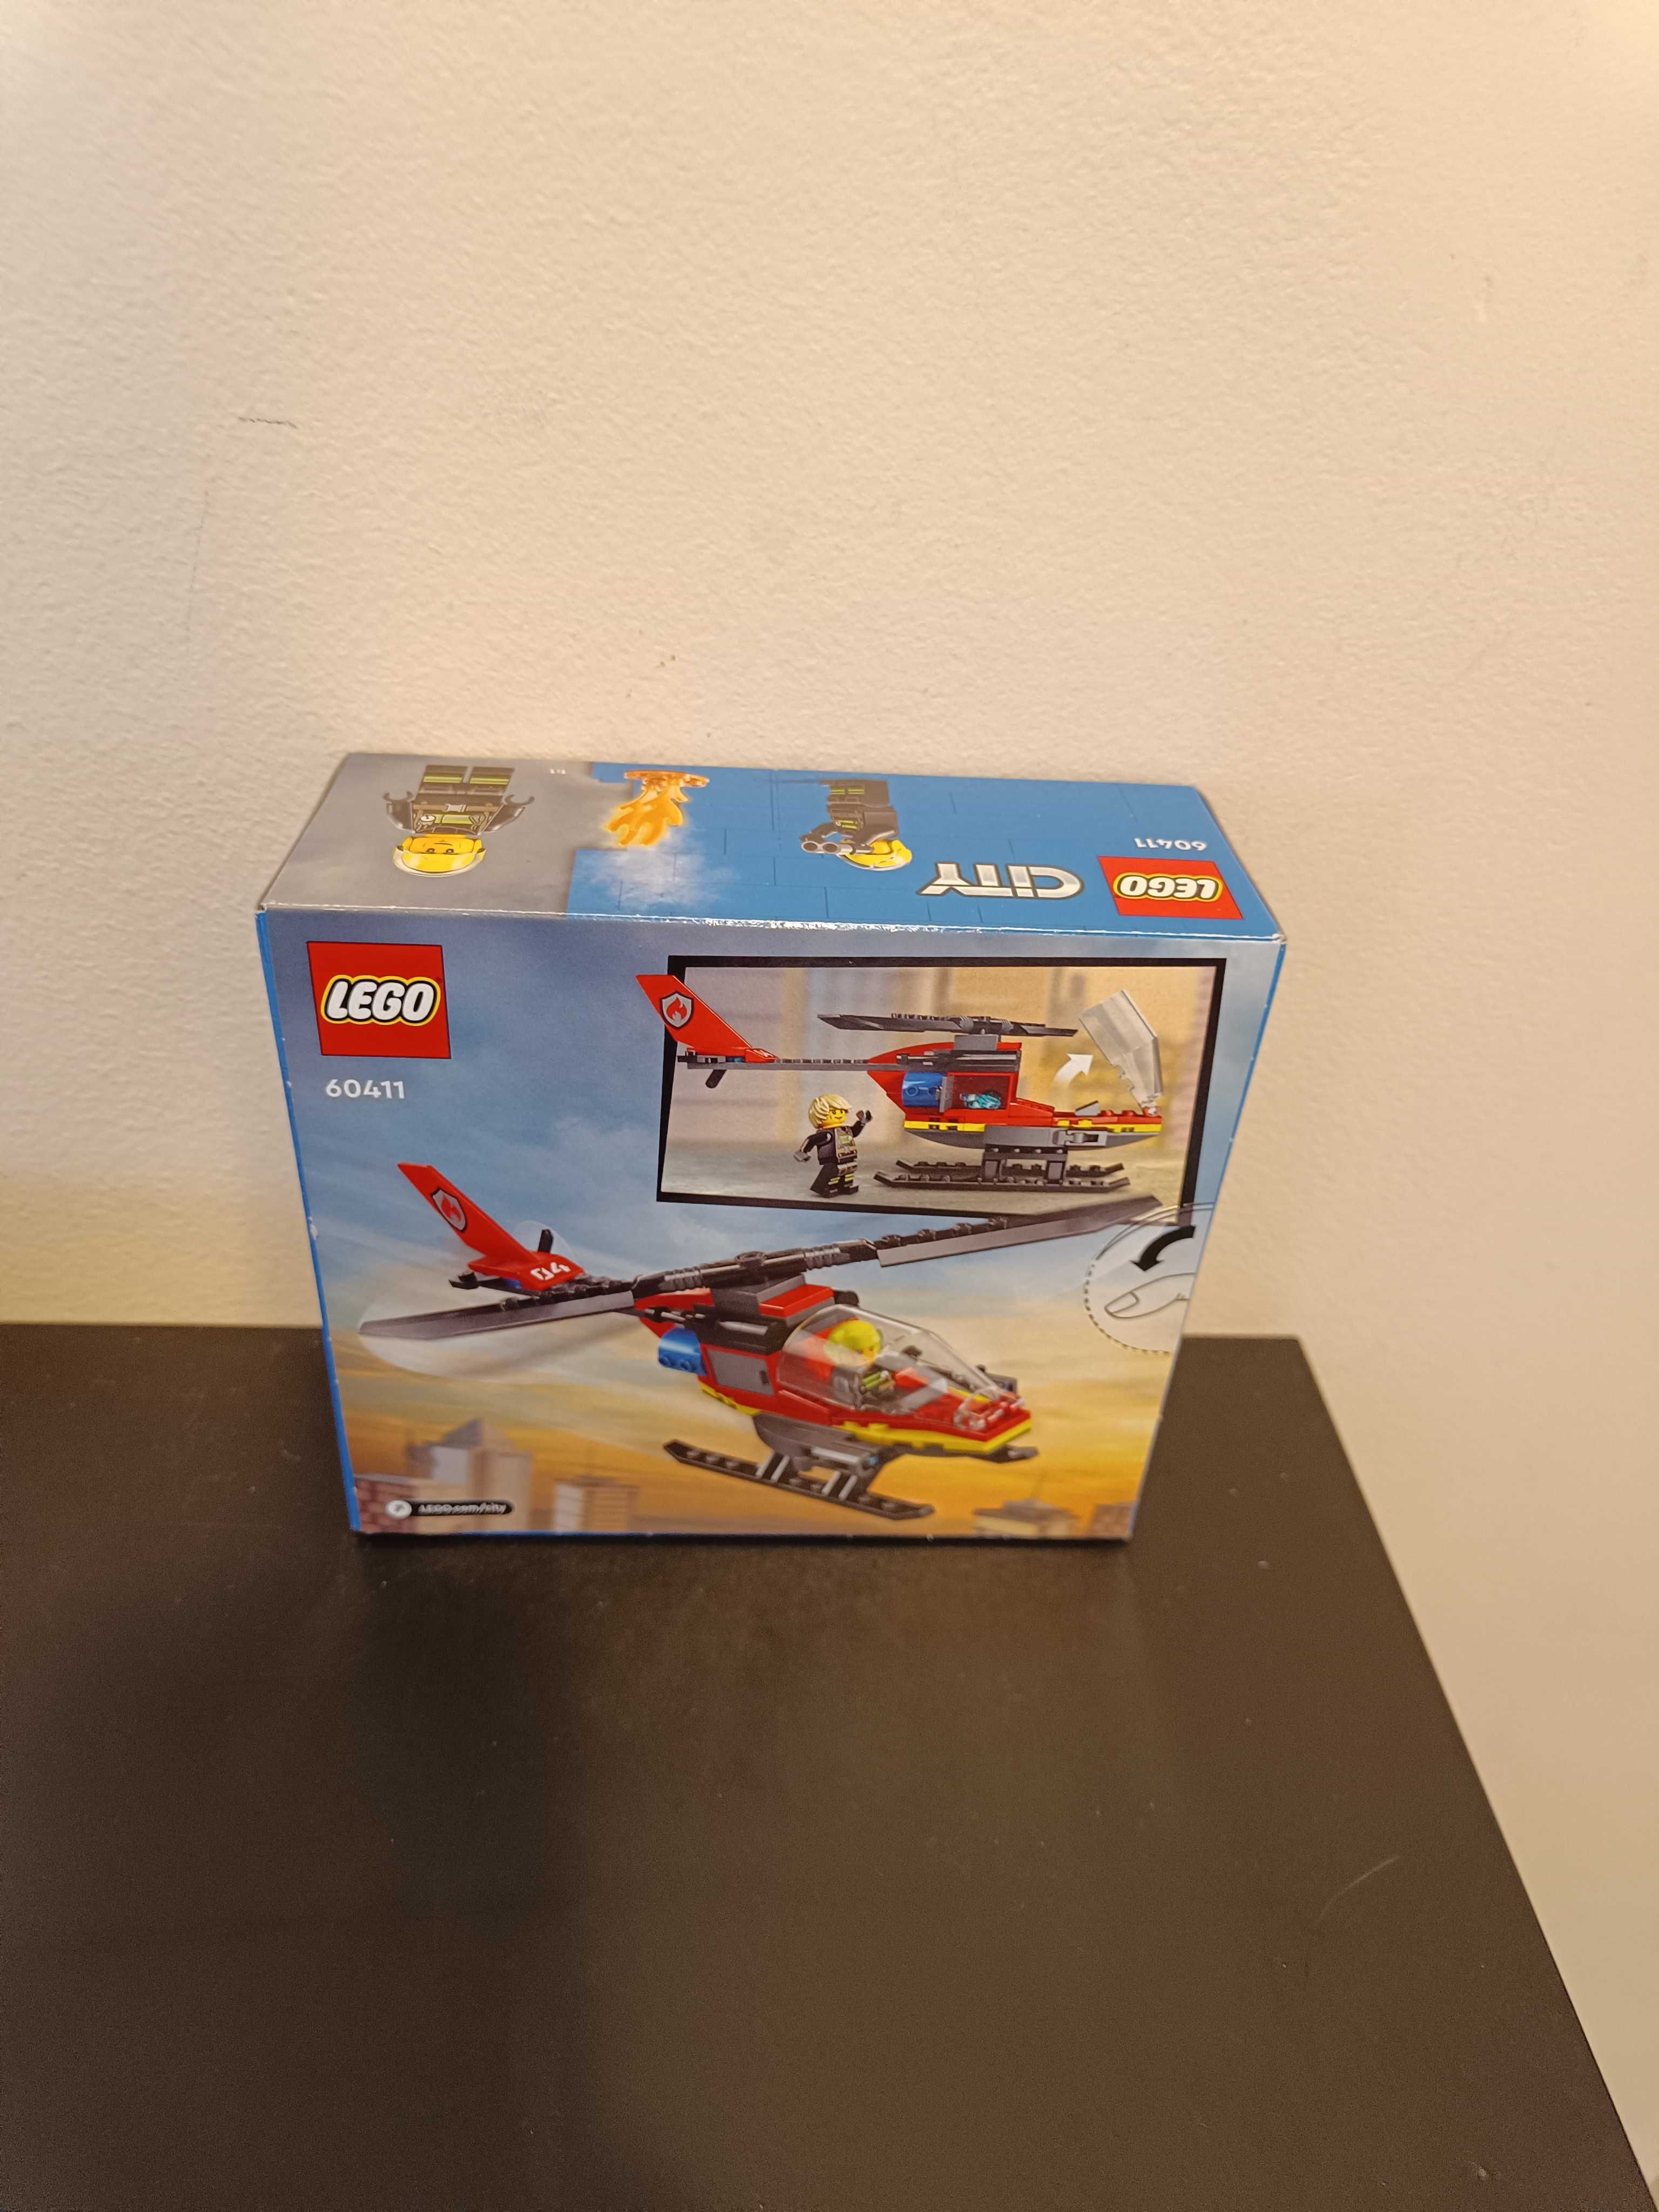 Lego city helikopter